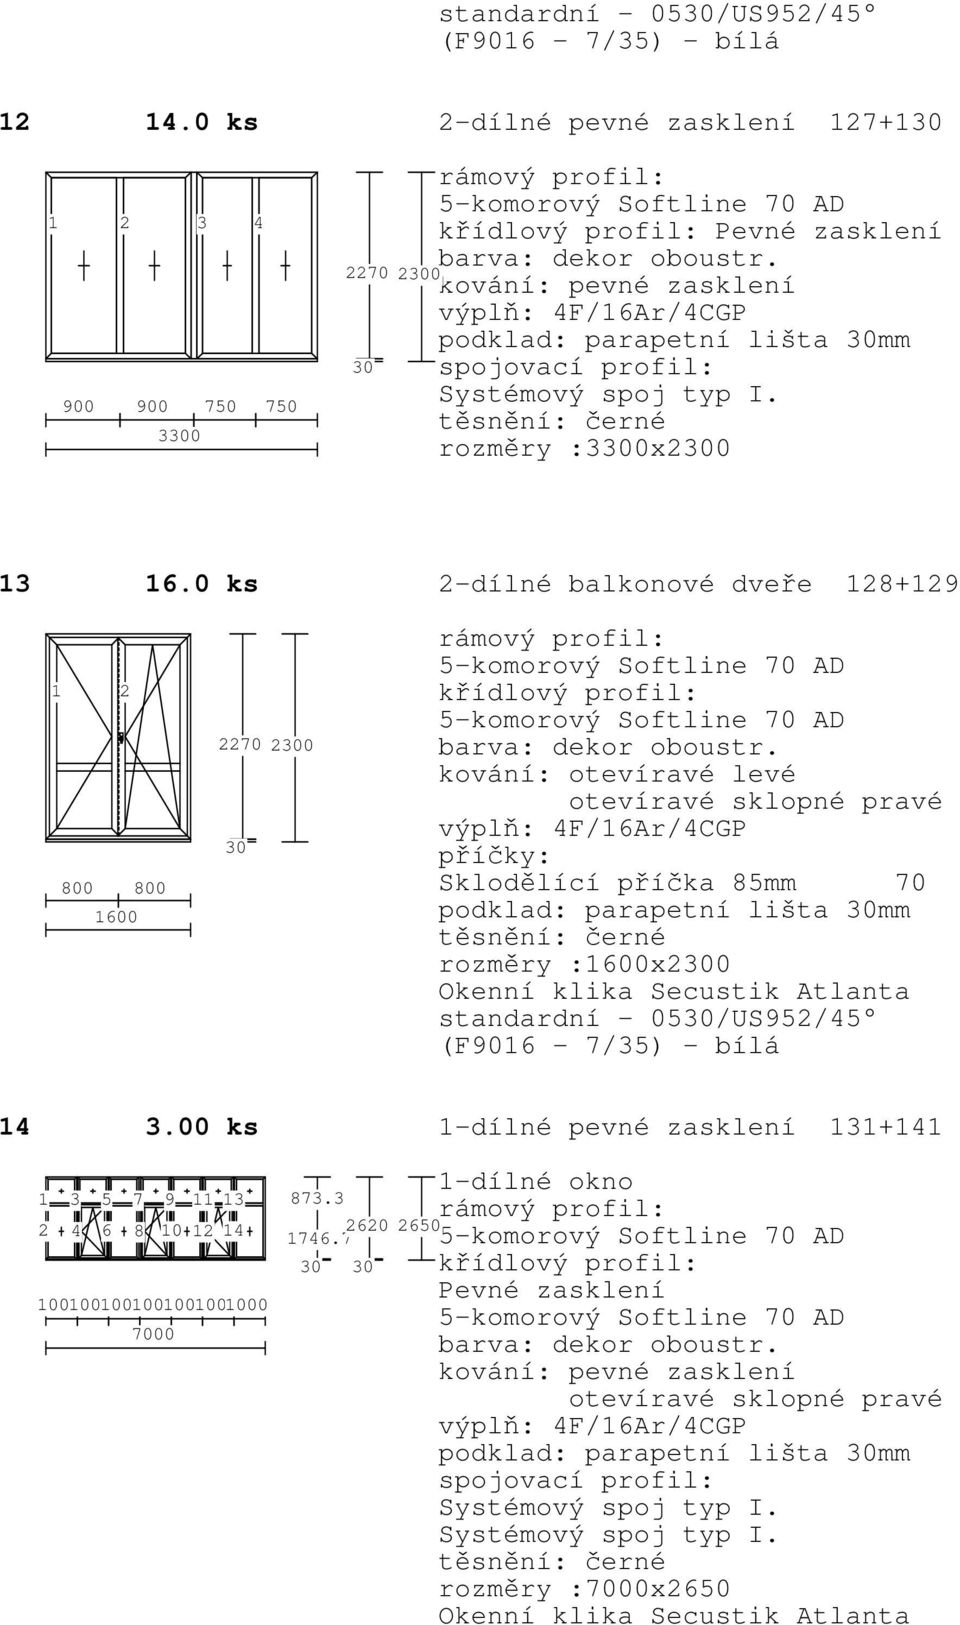 6.0 ks 2-dílné balkonové dveře 28+29 2 800 800 600 2270 20 podklad: parapetní lišta mm rozměry :600x20